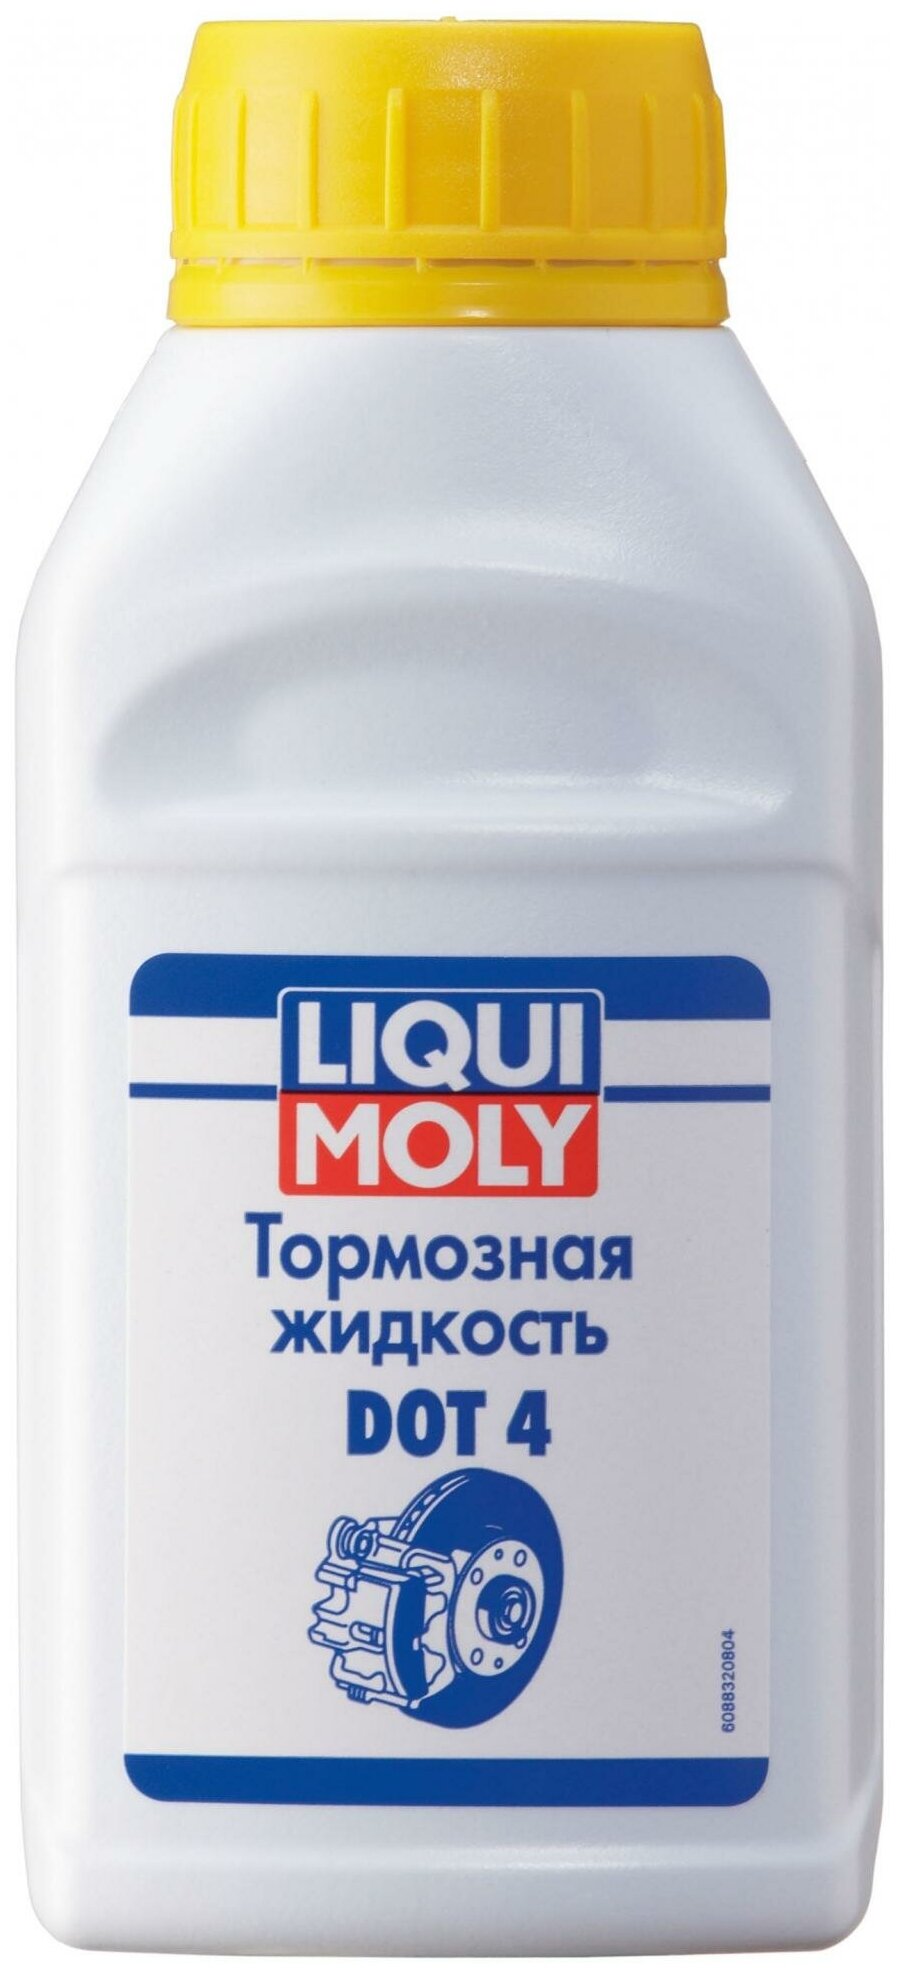 LIQUI MOLY Жидкость тормозная Liqui Moly Bremsenflussigkeit Dot-4 025л 8832